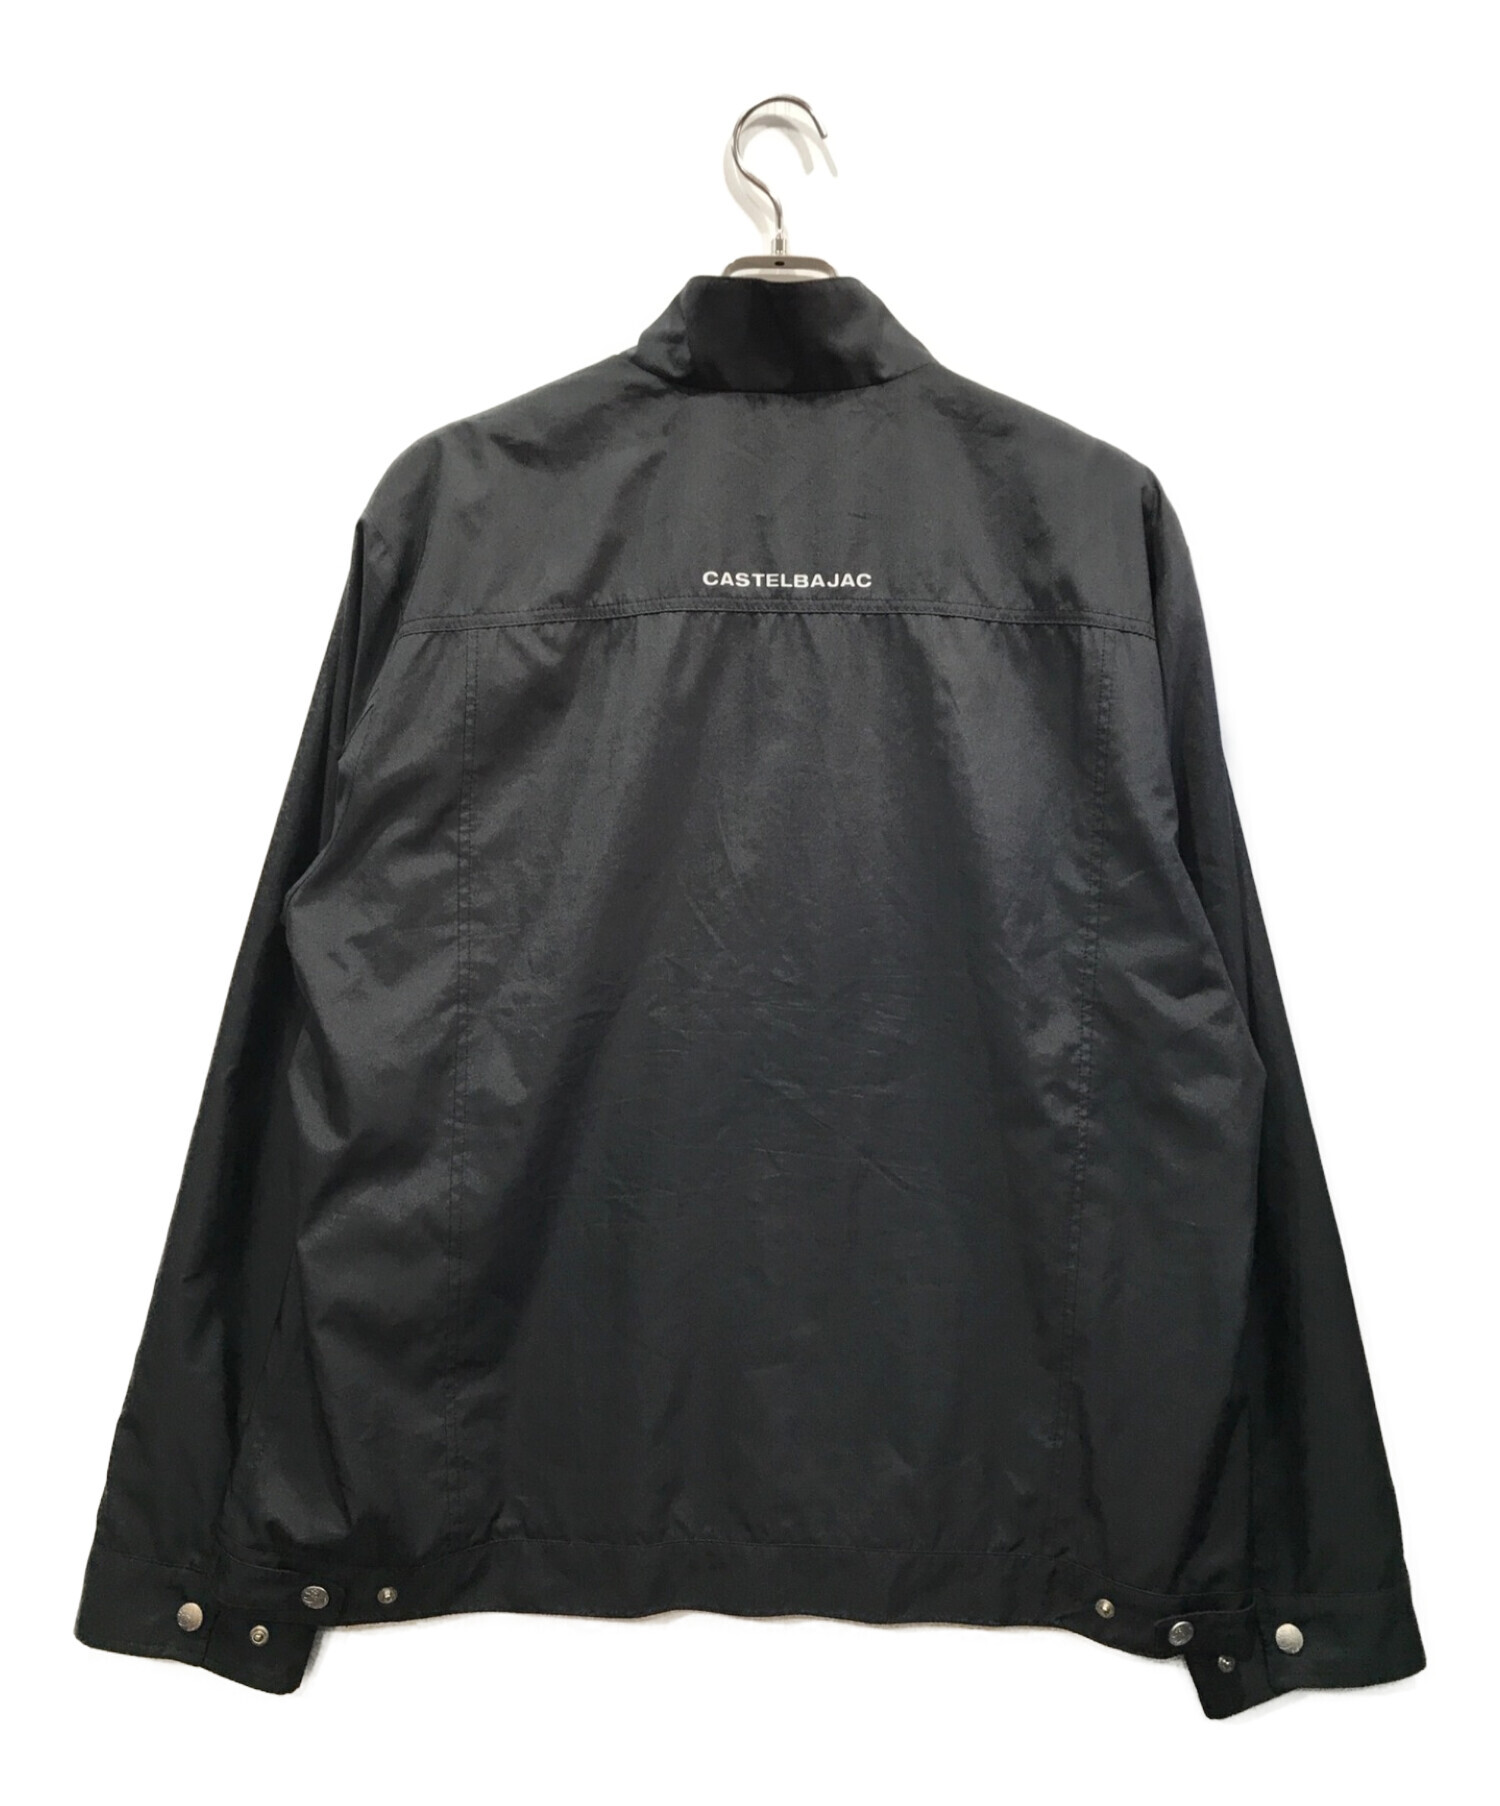 CASTELBAJAC (カステルバジャック) プリントナイロンジャケット ブラック サイズ:50